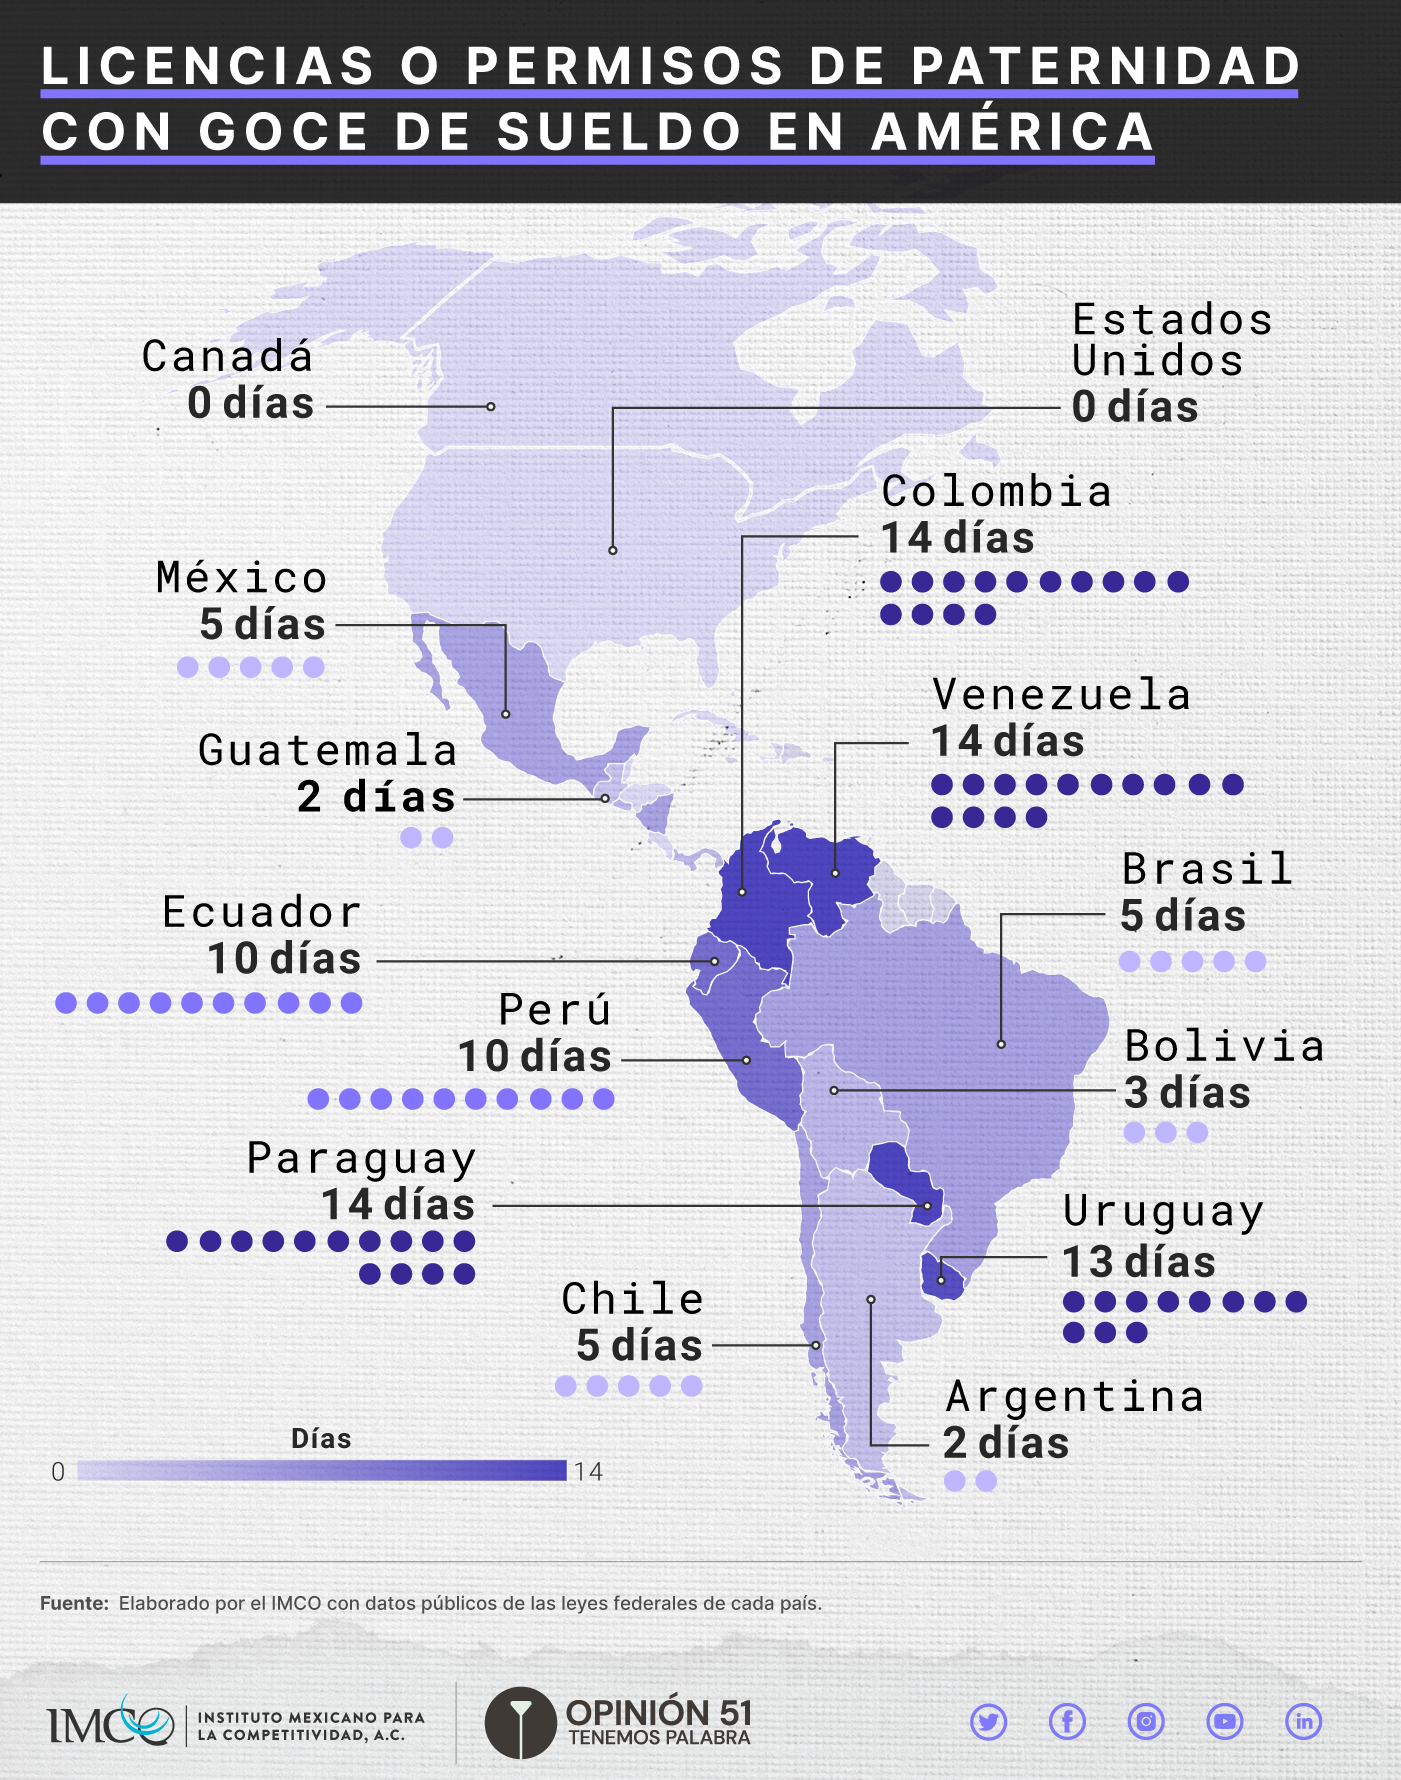 Algunos ejemplos de días de licencia de paternidad en distintos países | Fuente: IMCO 